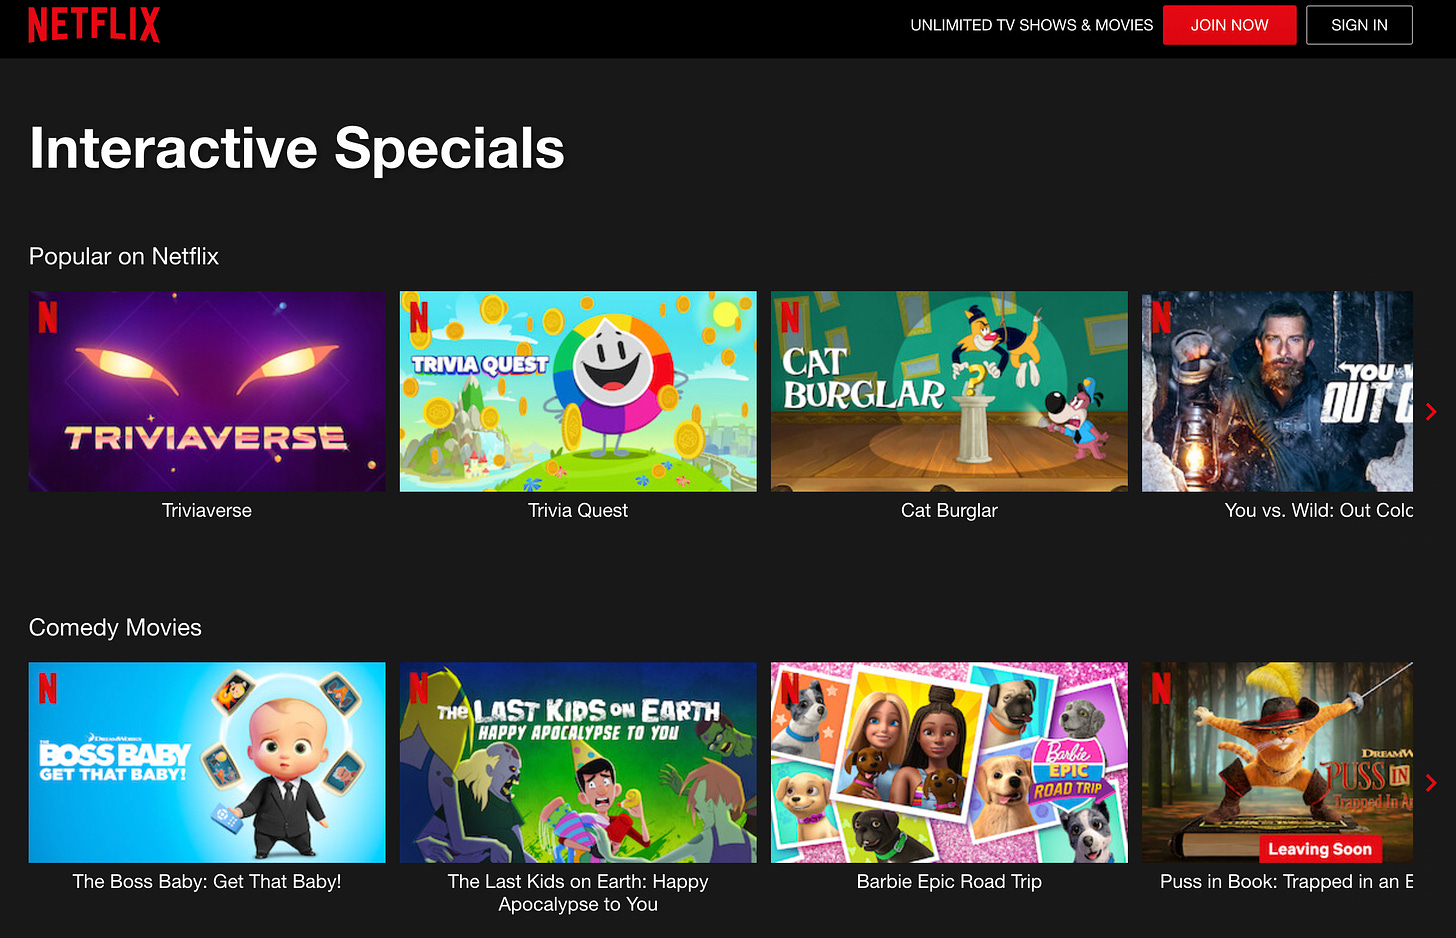 Une capture d'écran montrant des images miniatures pour Netflix s'affiche sous un titre intitulé "Offres spéciales interactives"